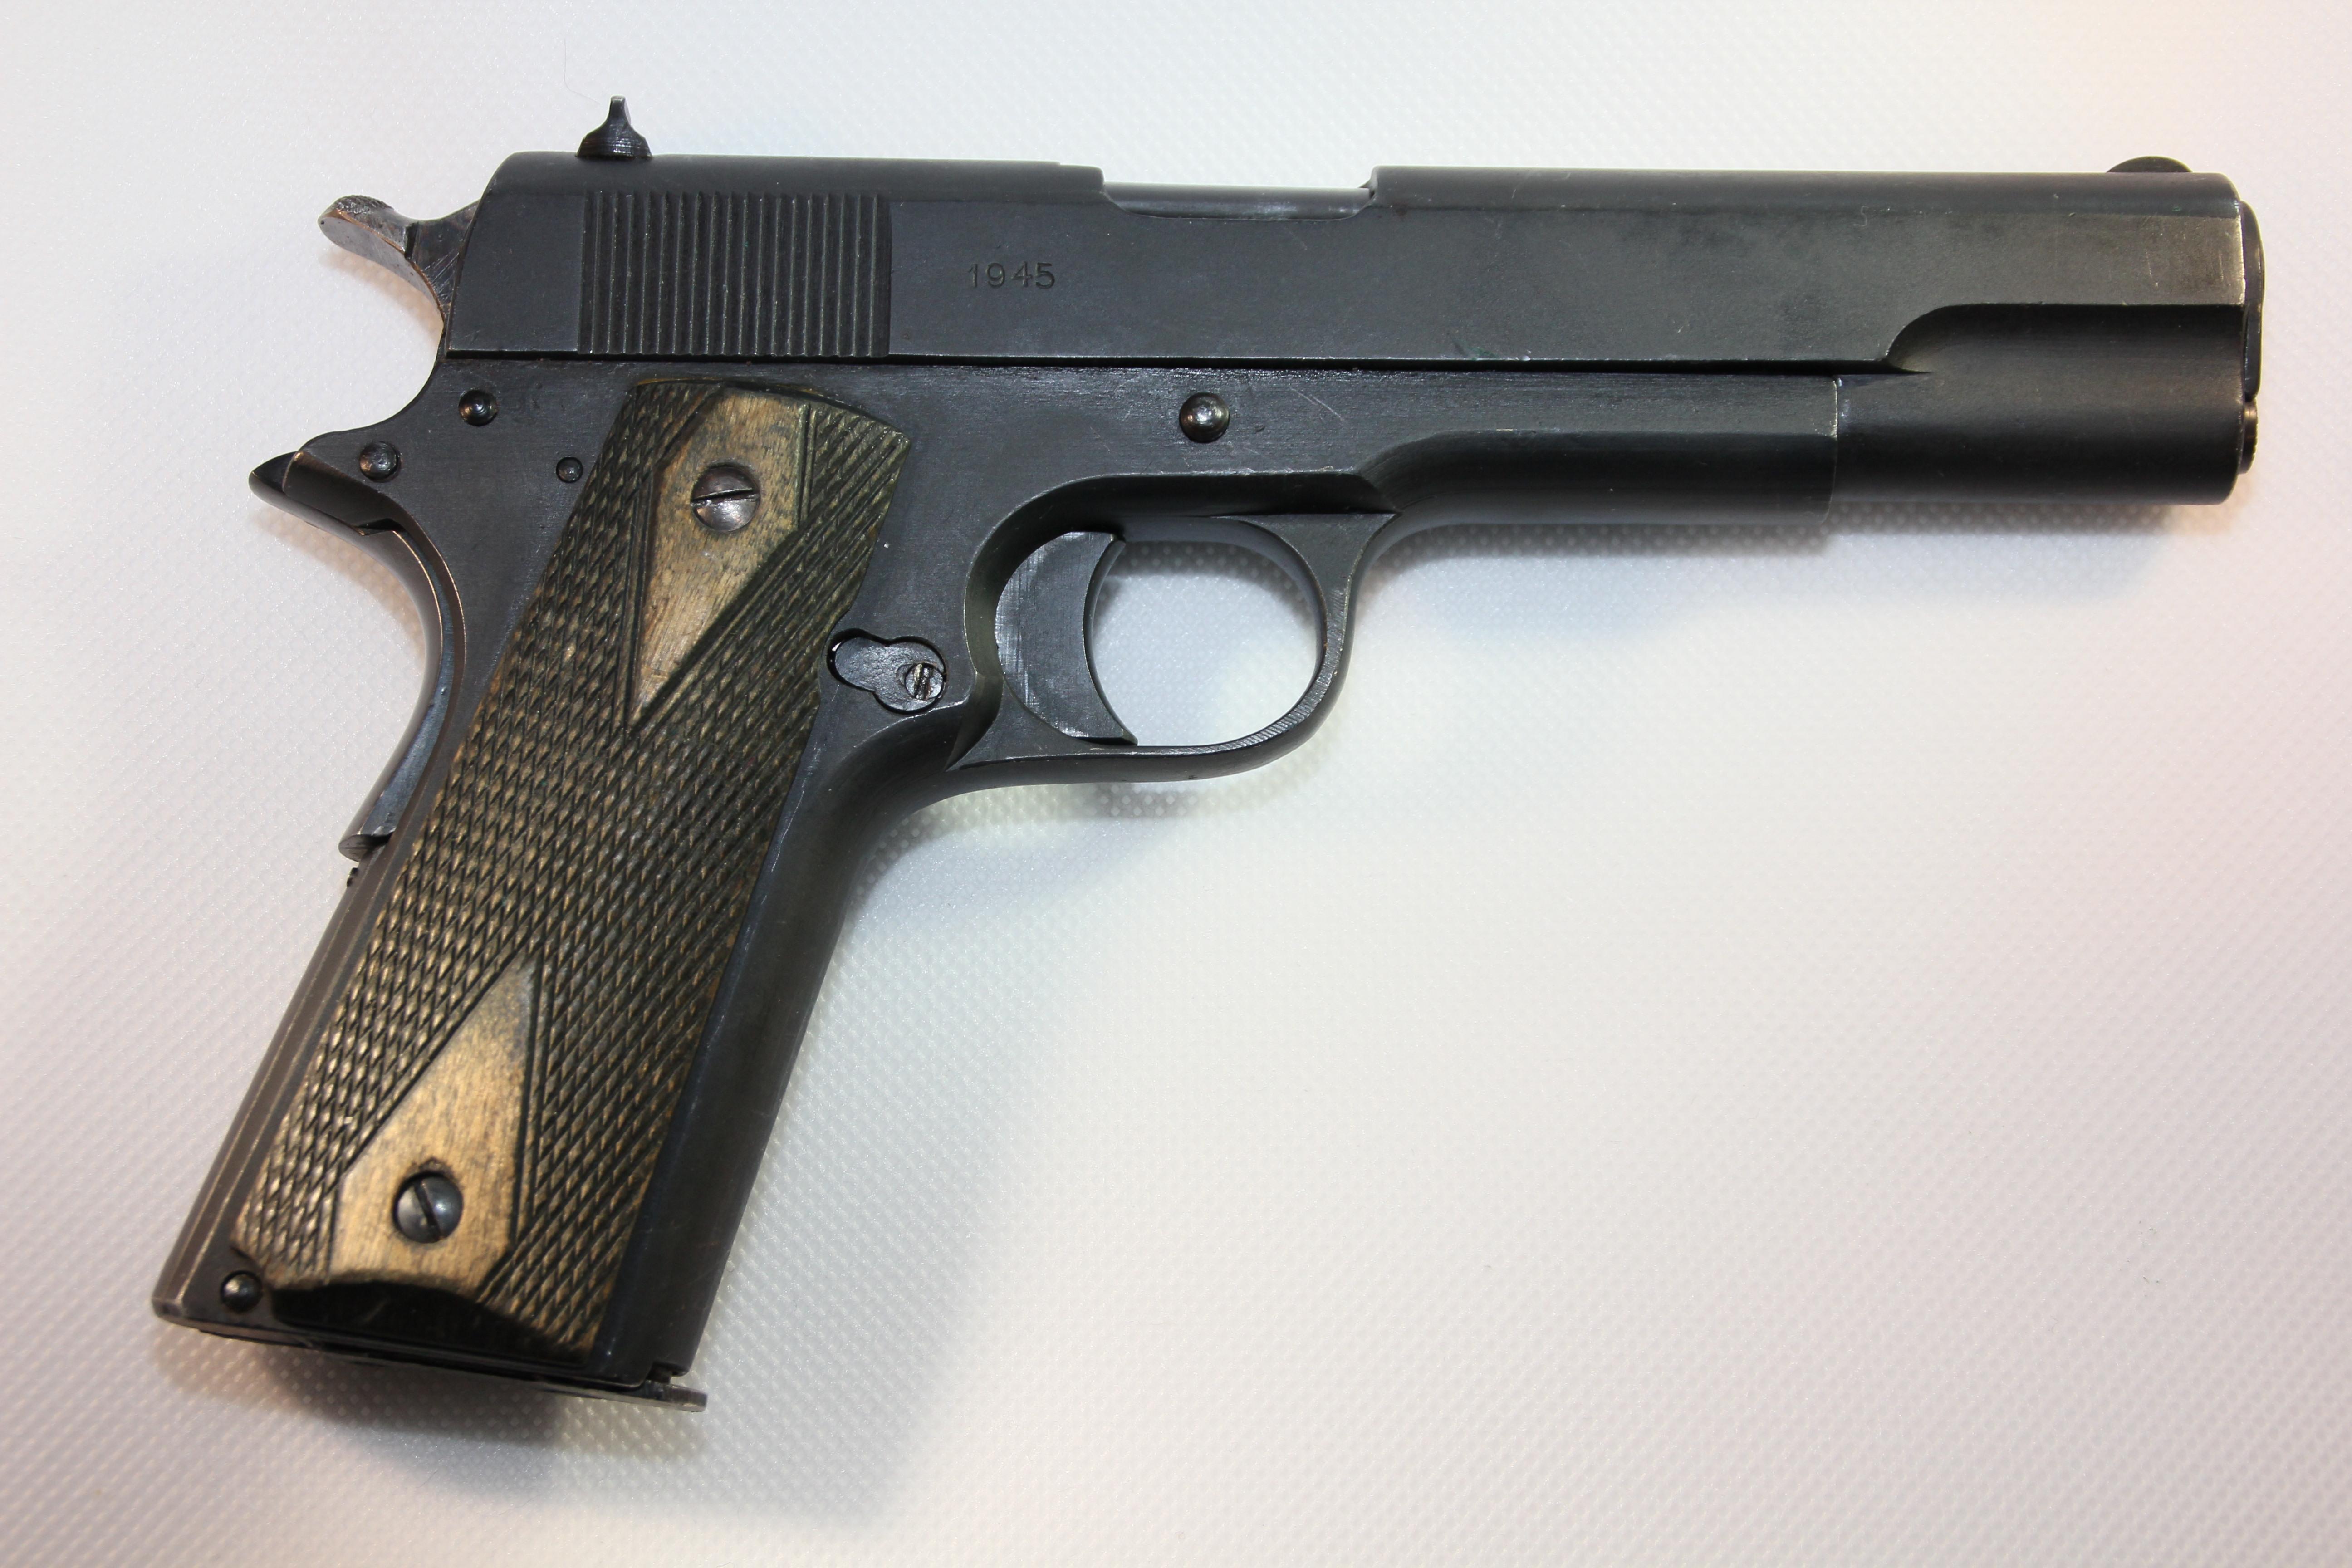 ./guns/pistol/bilder/Pistol-Kongsberg-M1914-1945-2.JPG